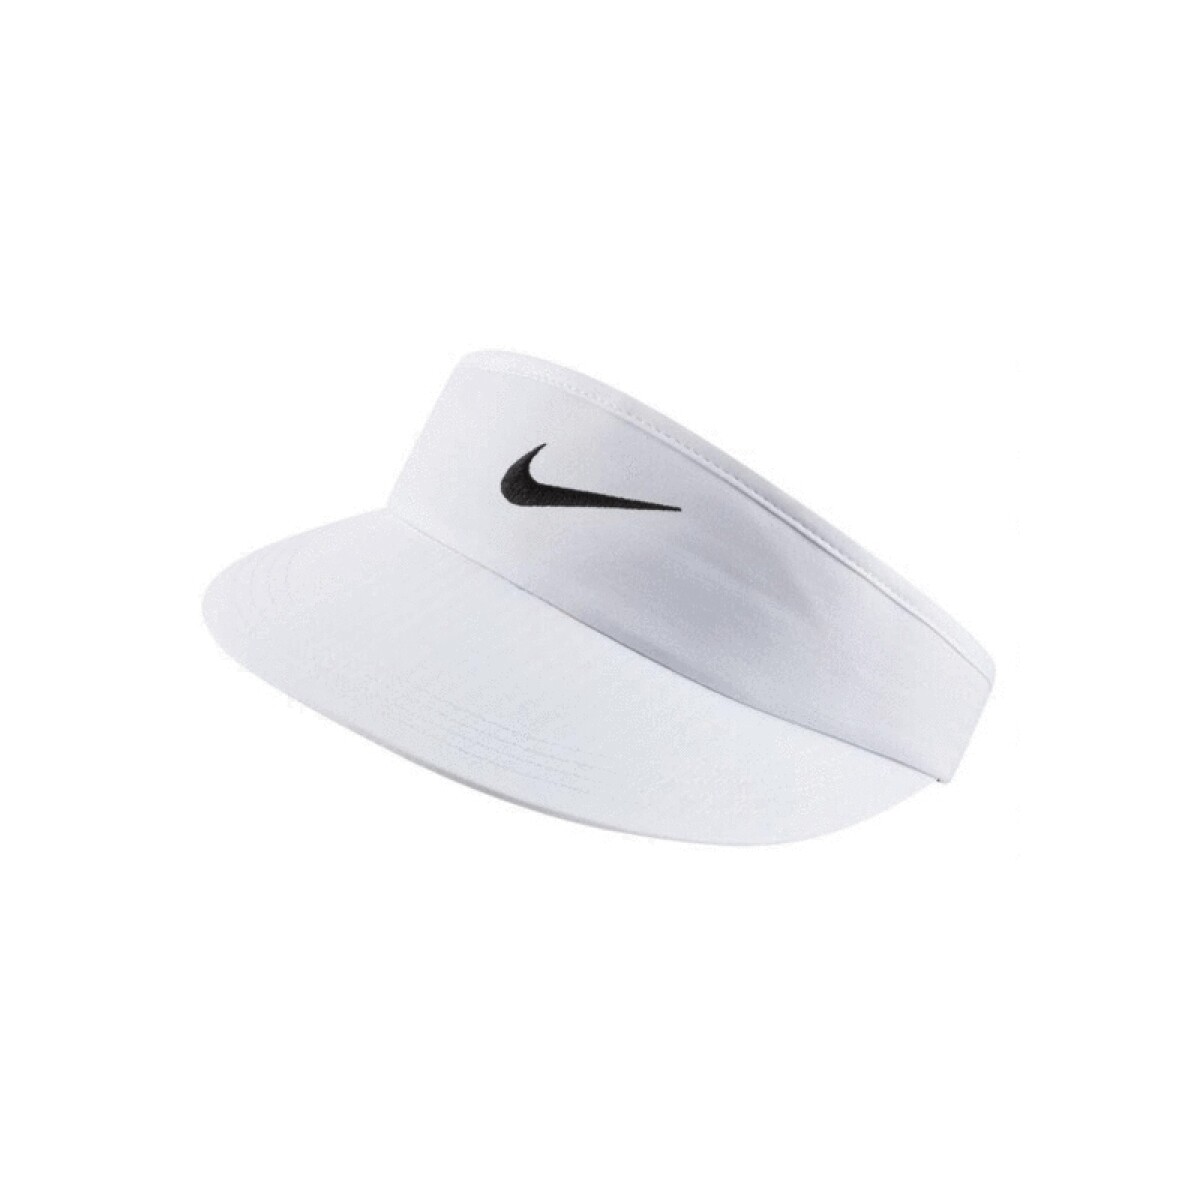 Visera Nike Aerobill Visor White - Color Único 